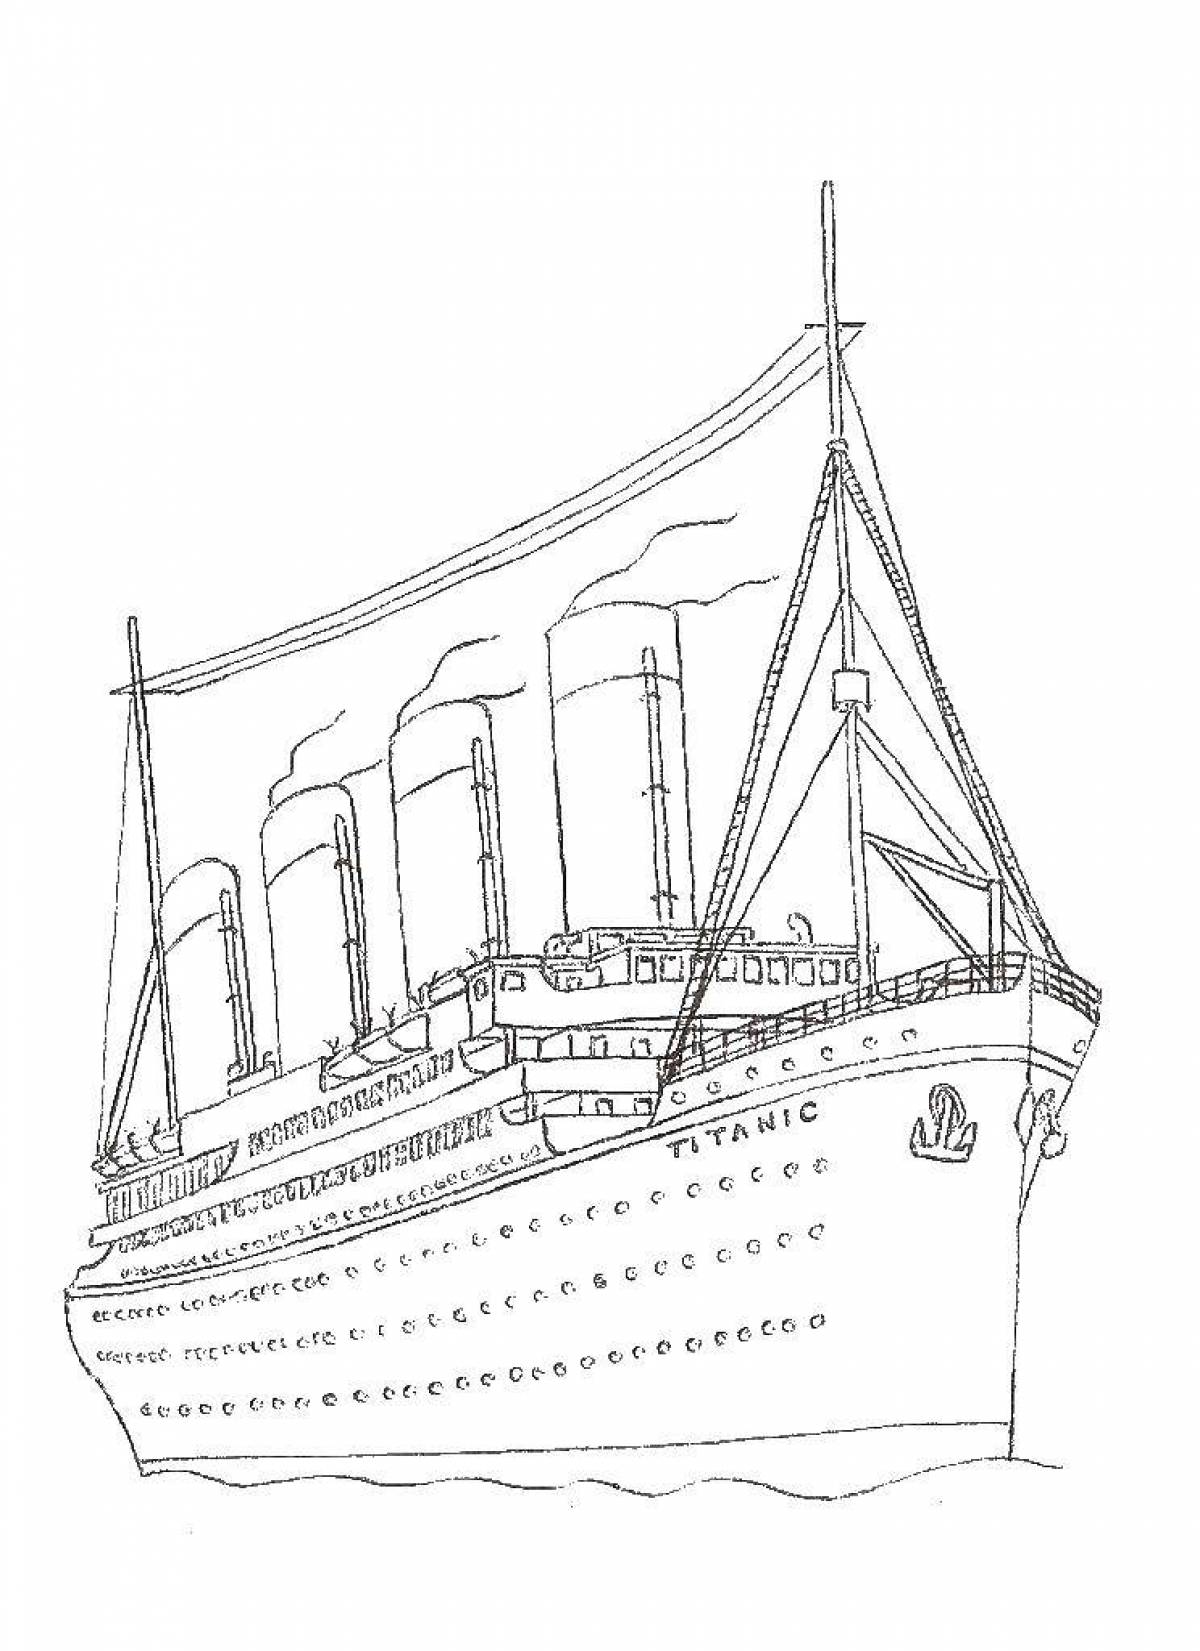 Figure titanic